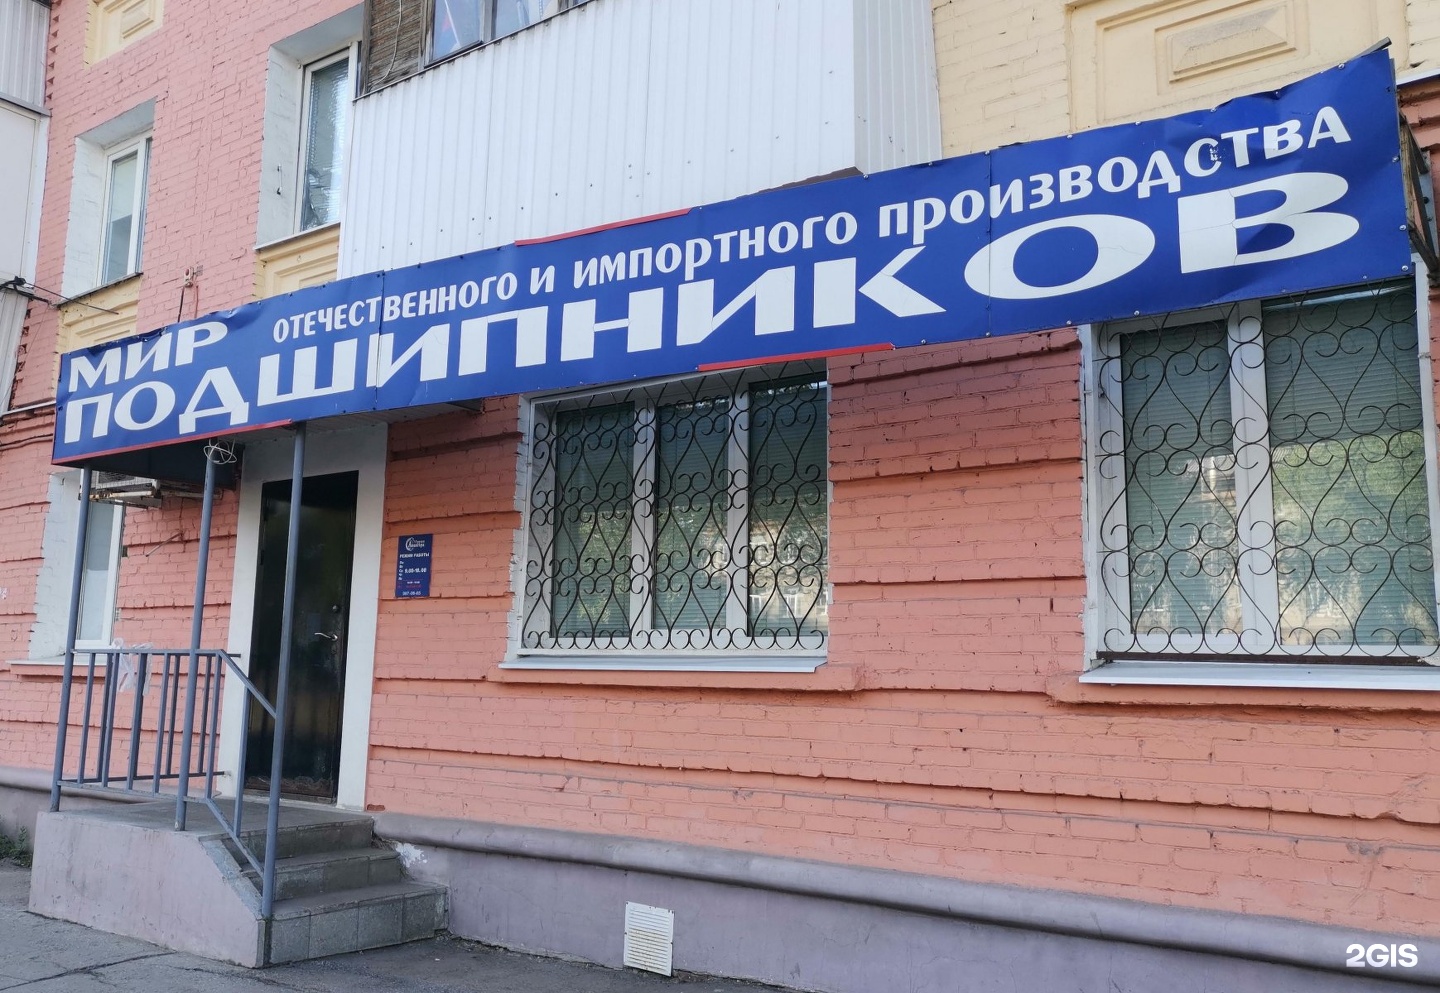 Магазины Подшипников Хабаровск